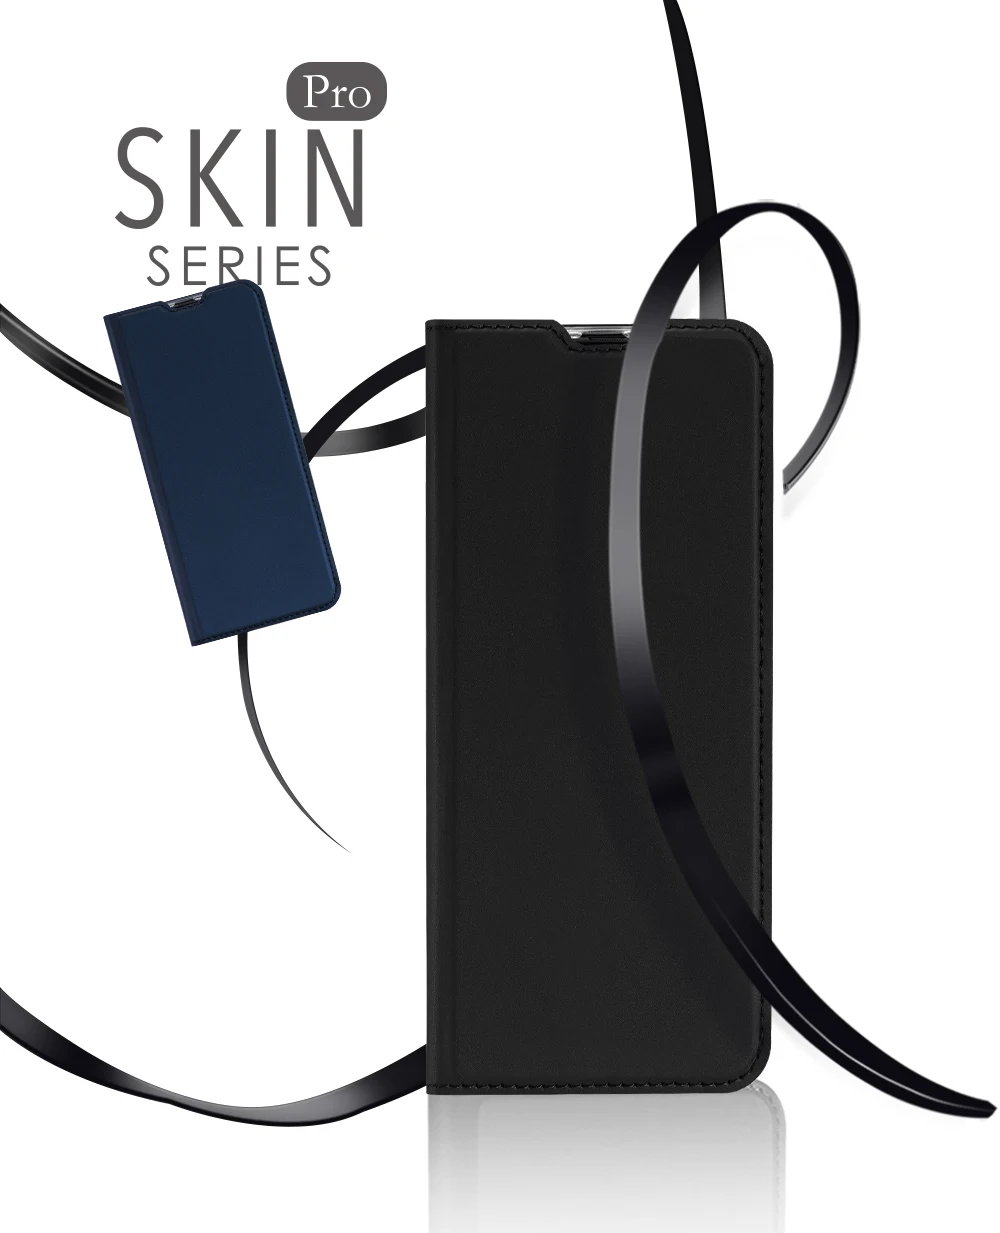 Флип-чехол для Moto One Action PU кожаный мягкий чехол для телефона защитный слот для карт держатель кошелек подставка чехол для мобильного телефона сумка